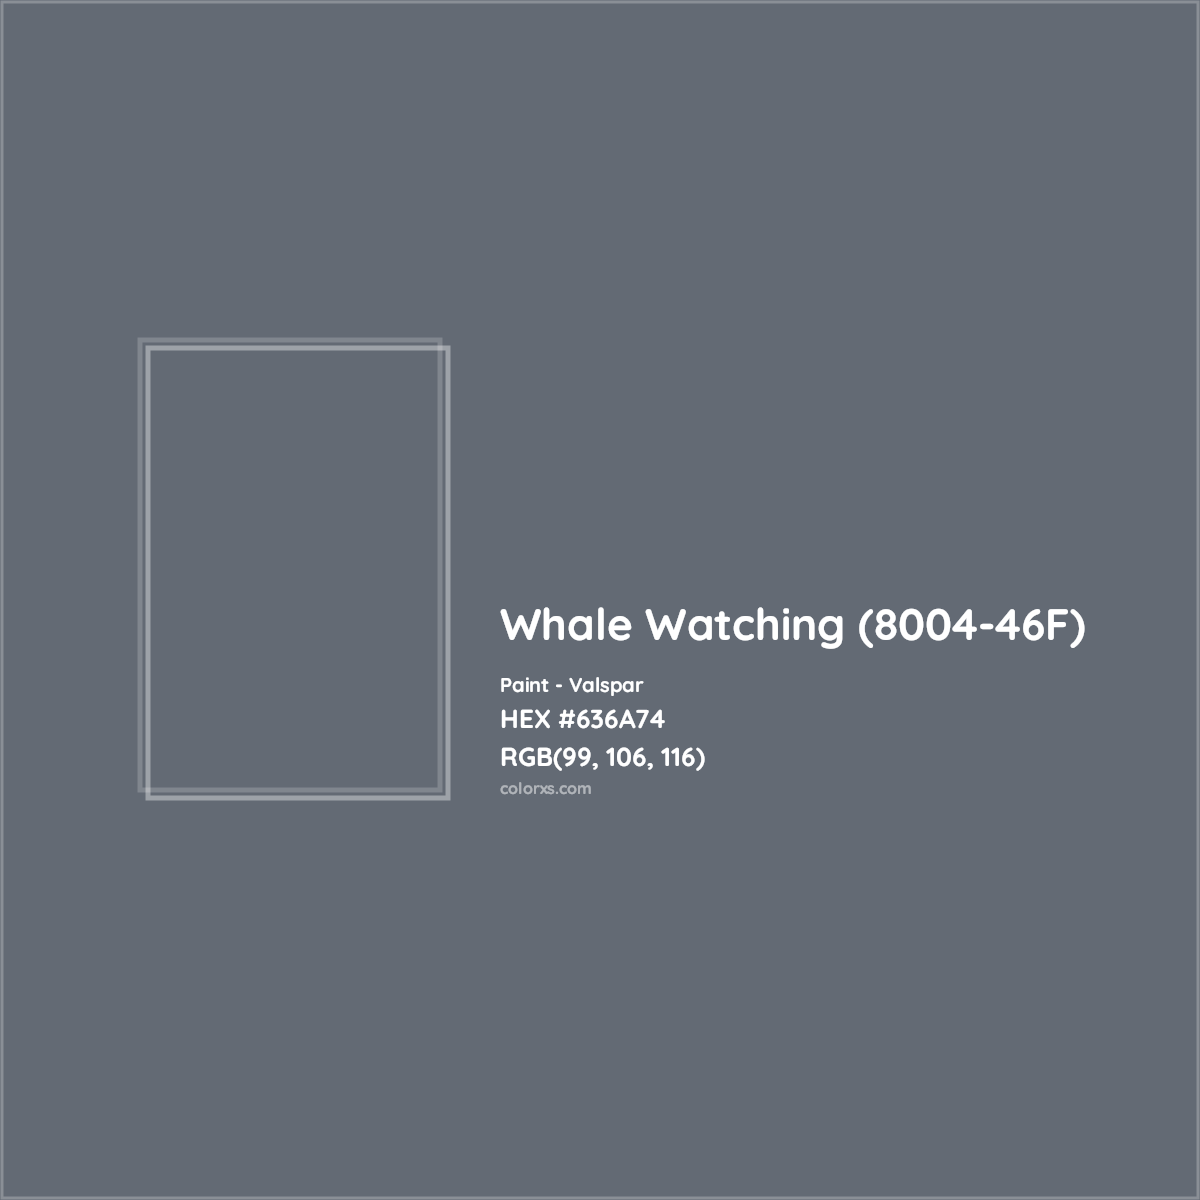 HEX #636A74 Whale Watching (8004-46F) Paint Valspar - Color Code